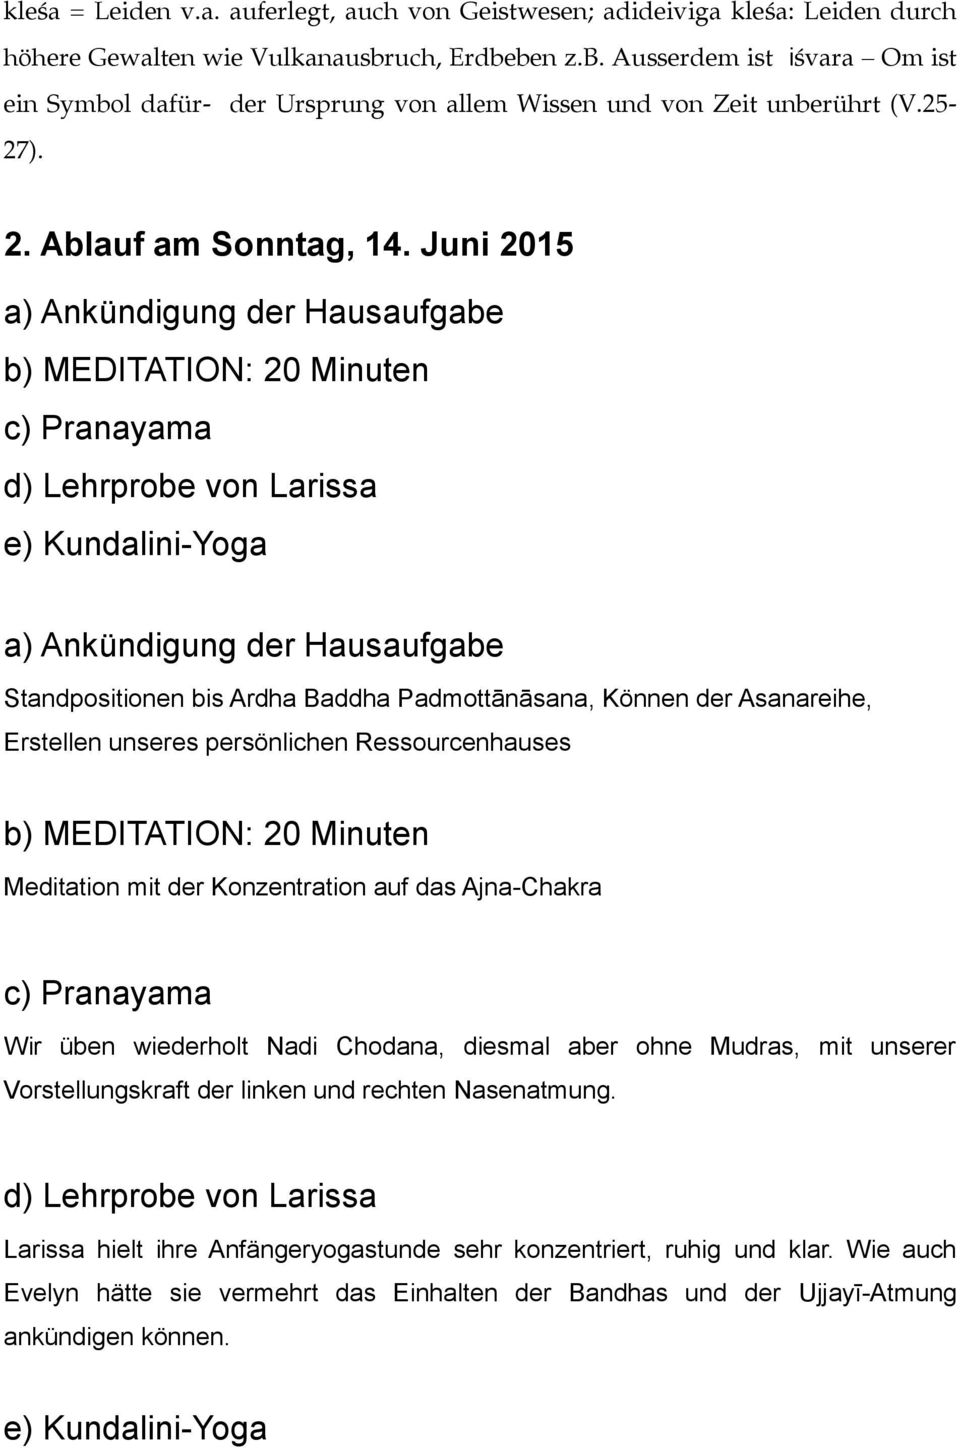 Juni 2015 a) Ankündigung der Hausaufgabe b) MEDITATION: 20 Minuten c) Pranayama d) Lehrprobe von Larissa e) Kundalini-Yoga a) Ankündigung der Hausaufgabe Standpositionen bis Ardha Baddha